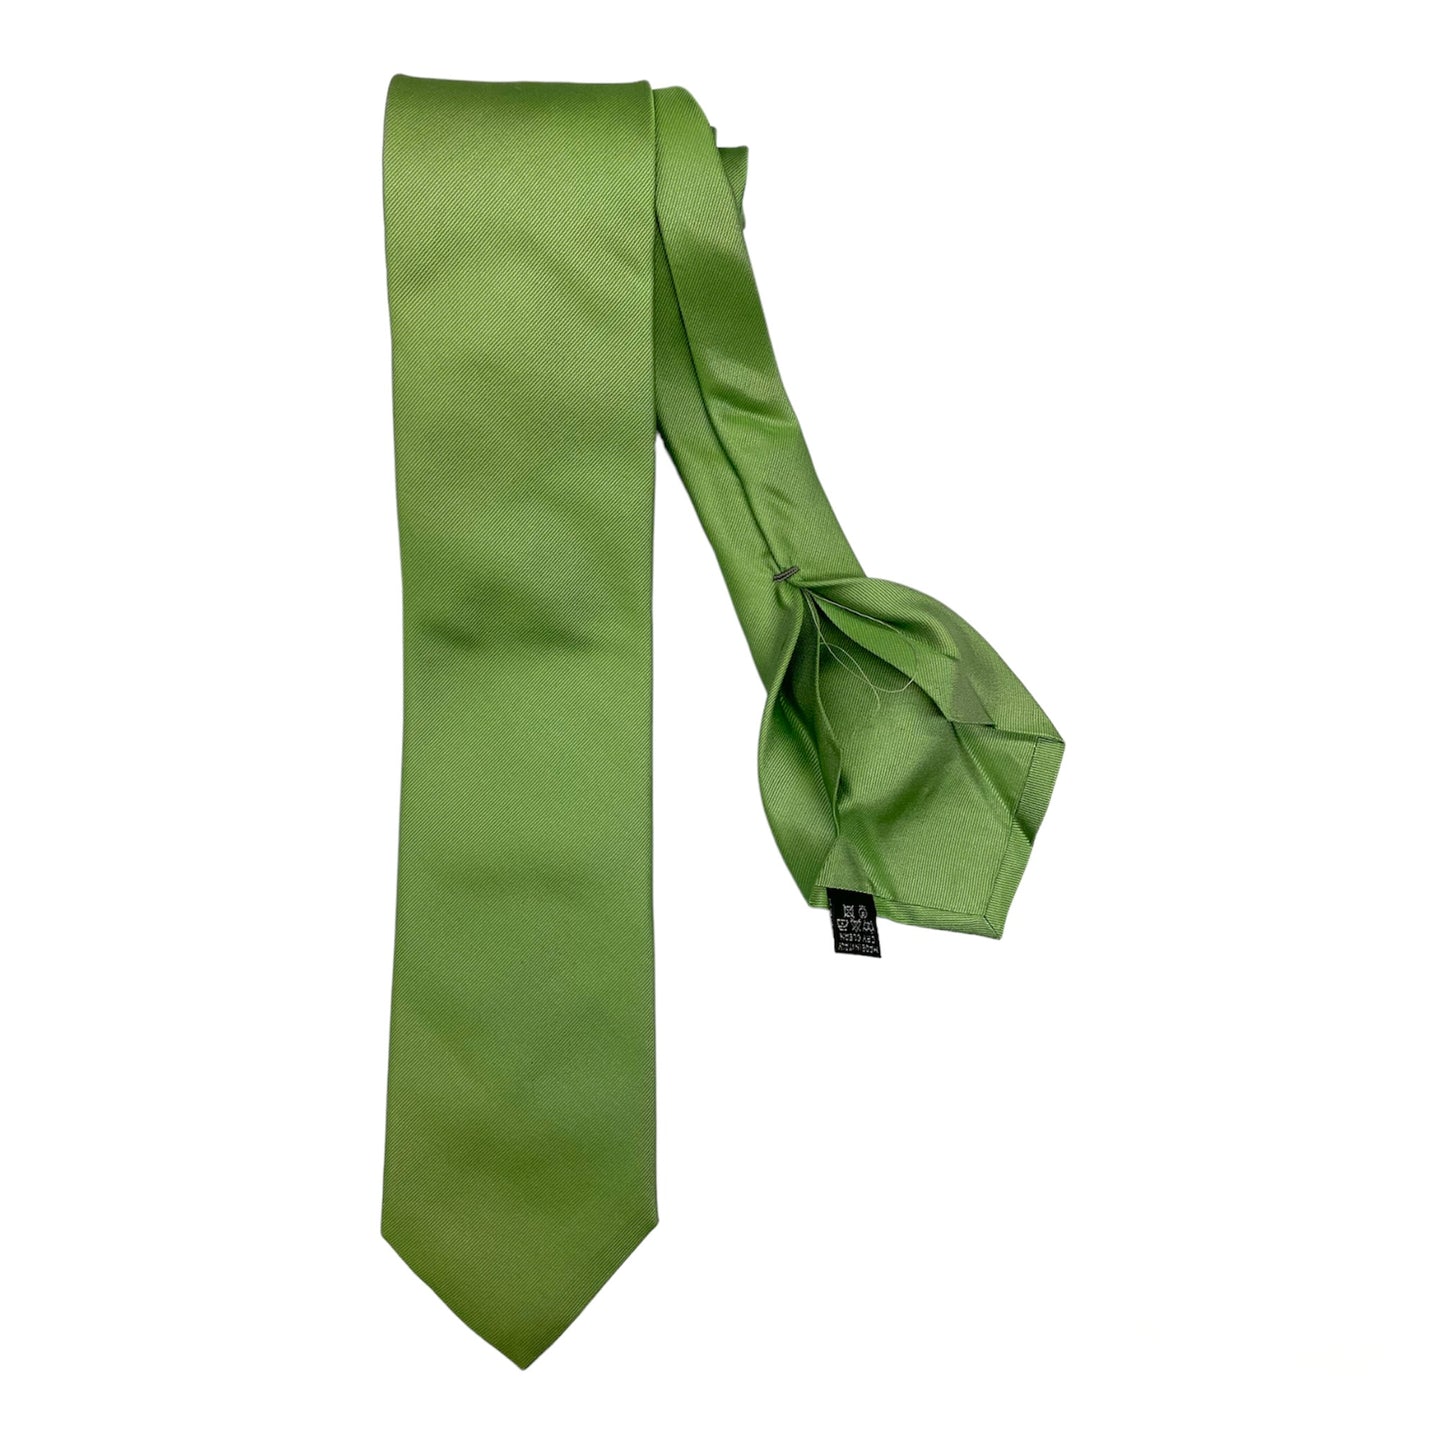 Solid color green silk tie